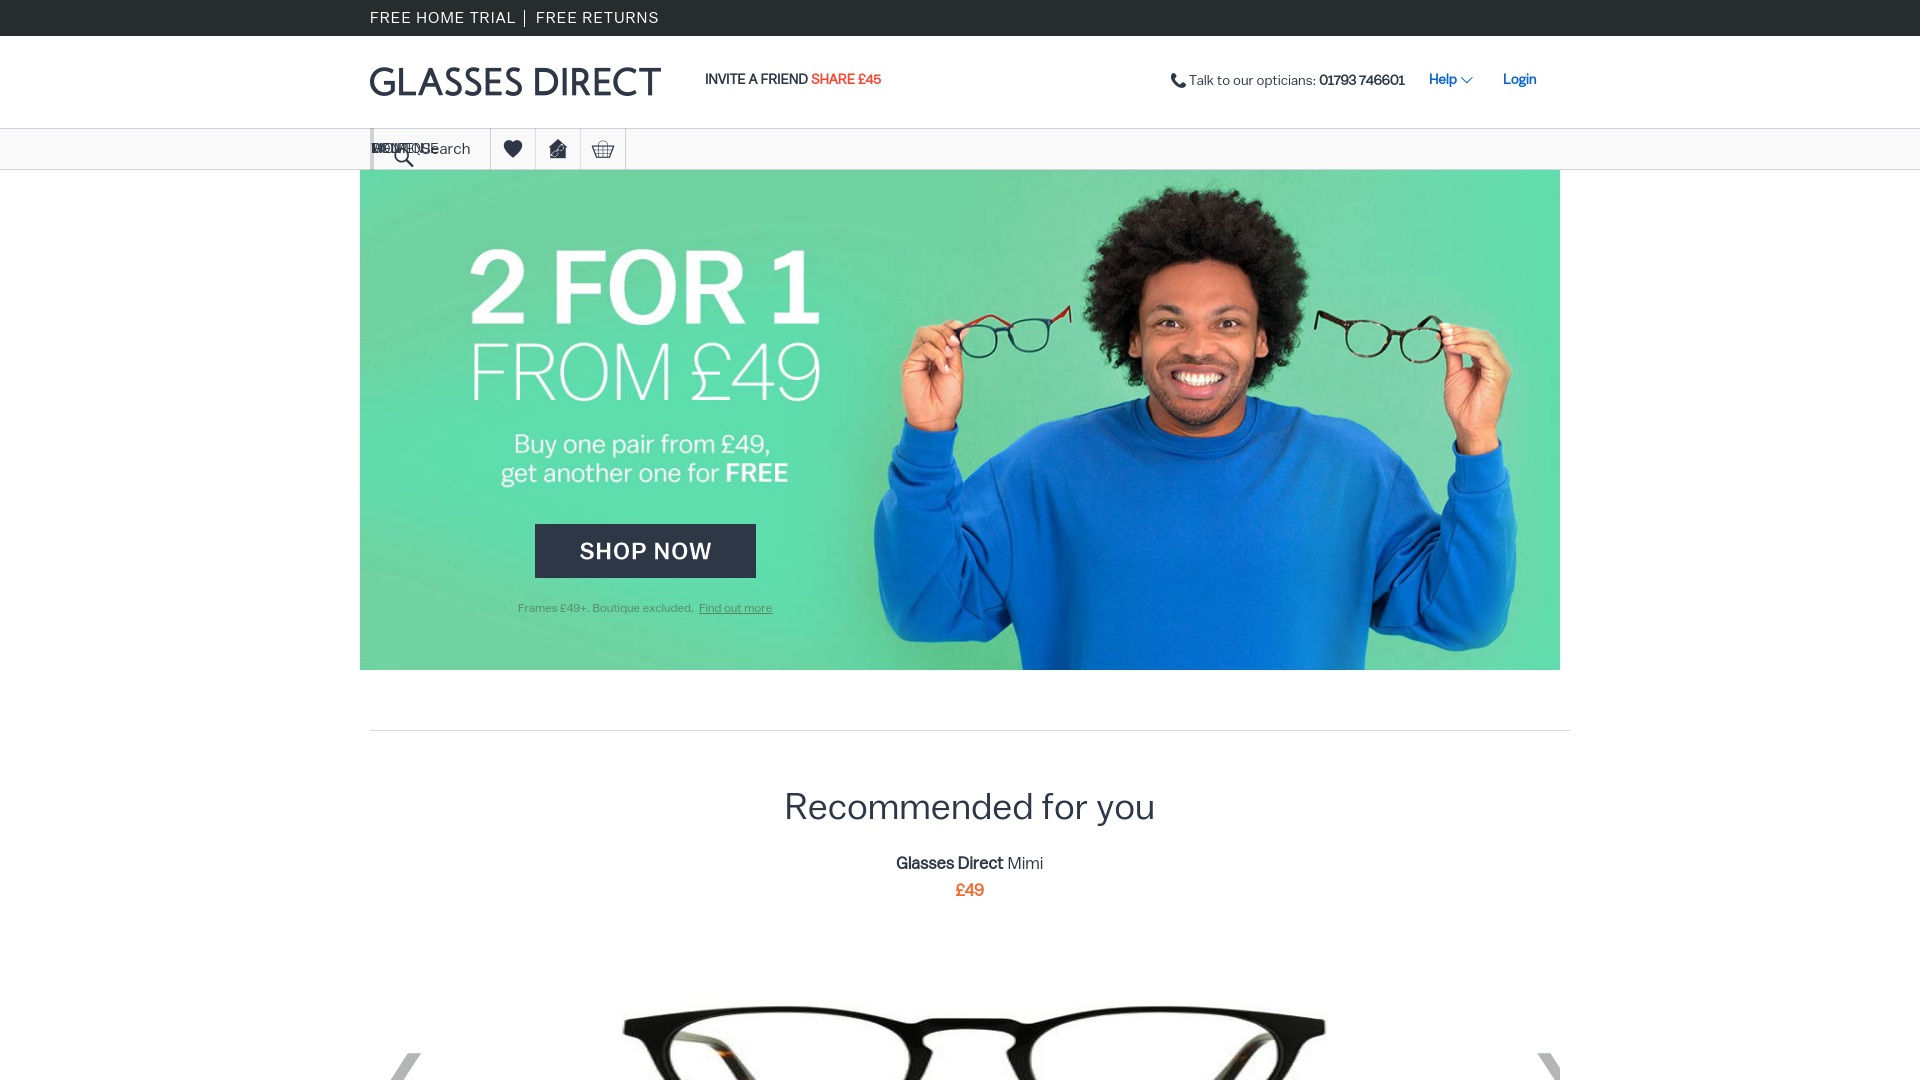 Geld zurück bei Glassesdirect: Jetzt im August 2022 Cashback für Glassesdirect sichern